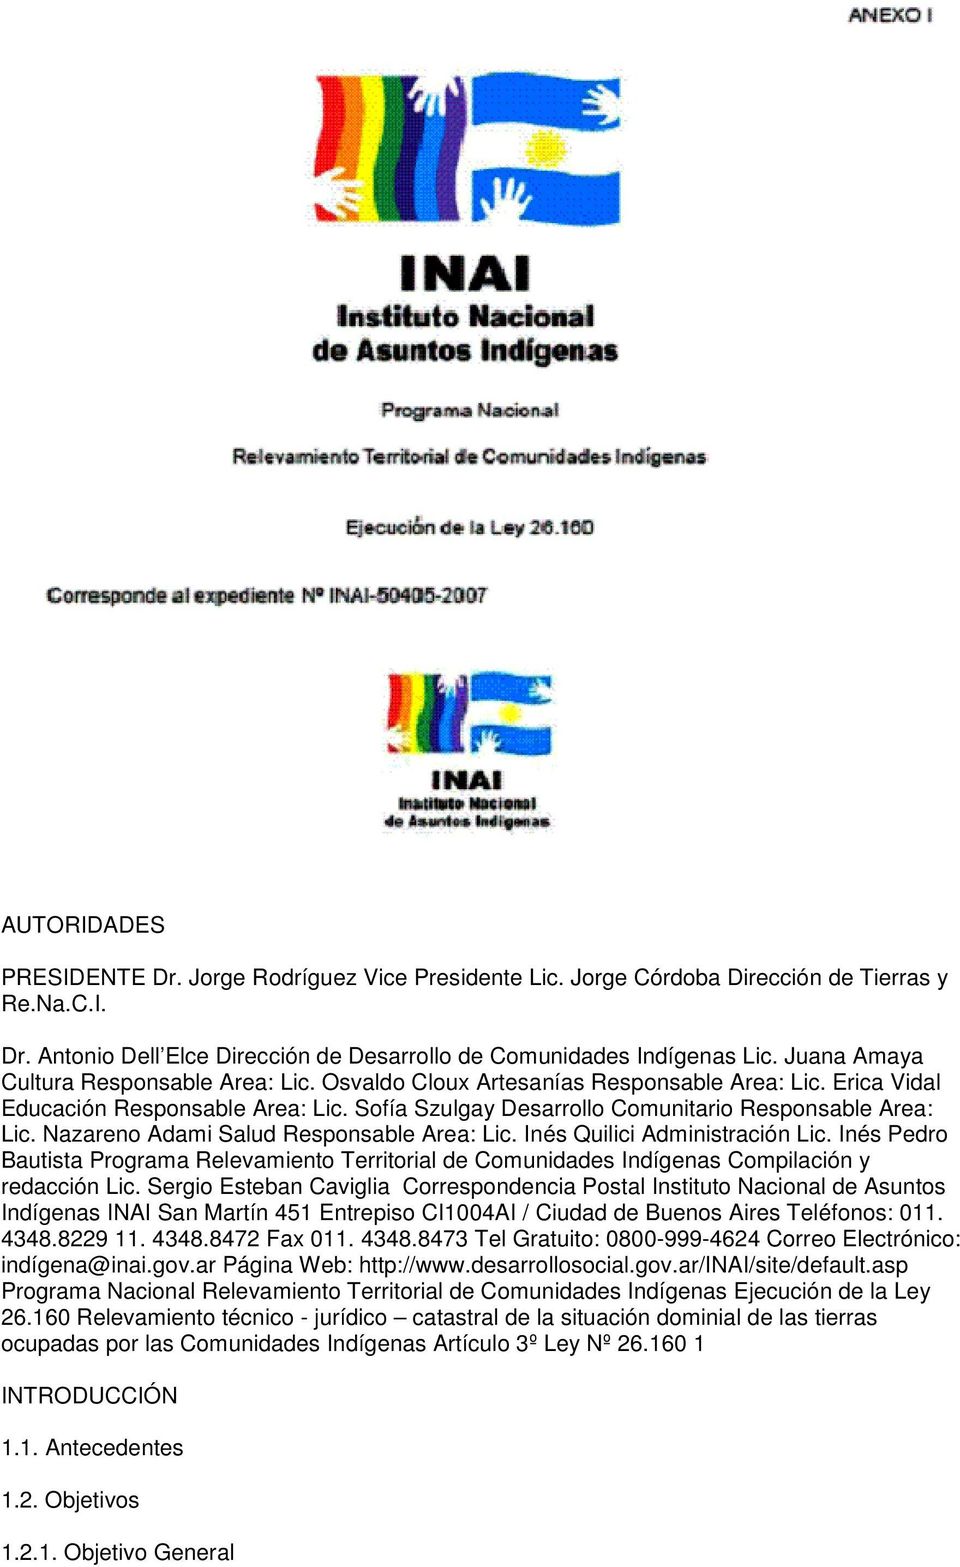 Nazareno Adami Salud Responsable Area: Lic. Inés Quilici Administración Lic. Inés Pedro Bautista Programa Relevamiento Territorial de Comunidades Indígenas Compilación y redacción Lic.